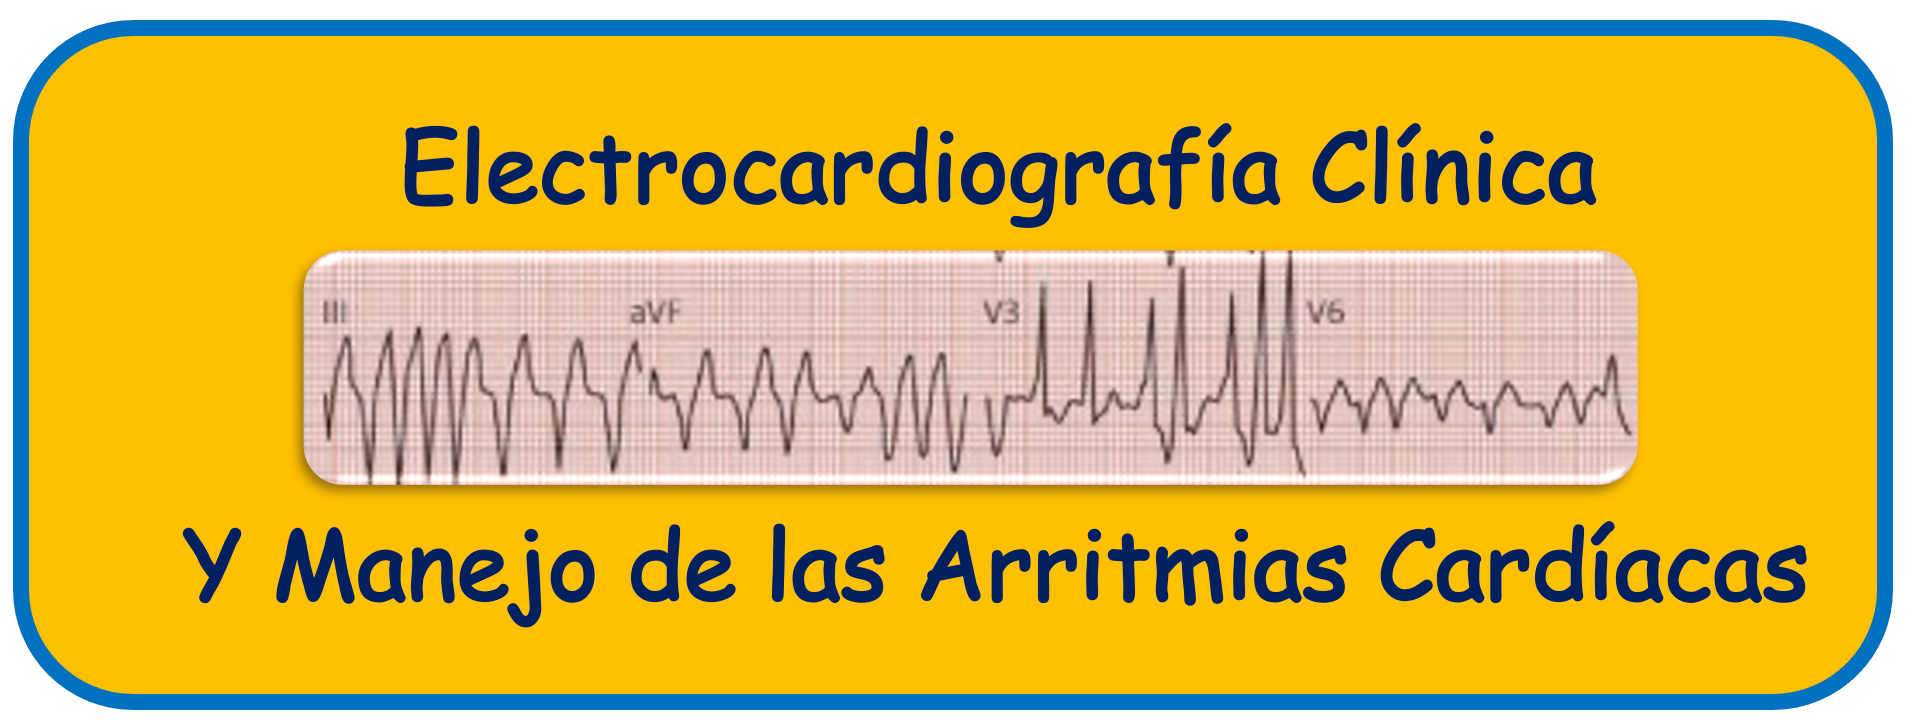 Electrocardiografía Clínica y Manejo de las Arritmias Cardiacas 